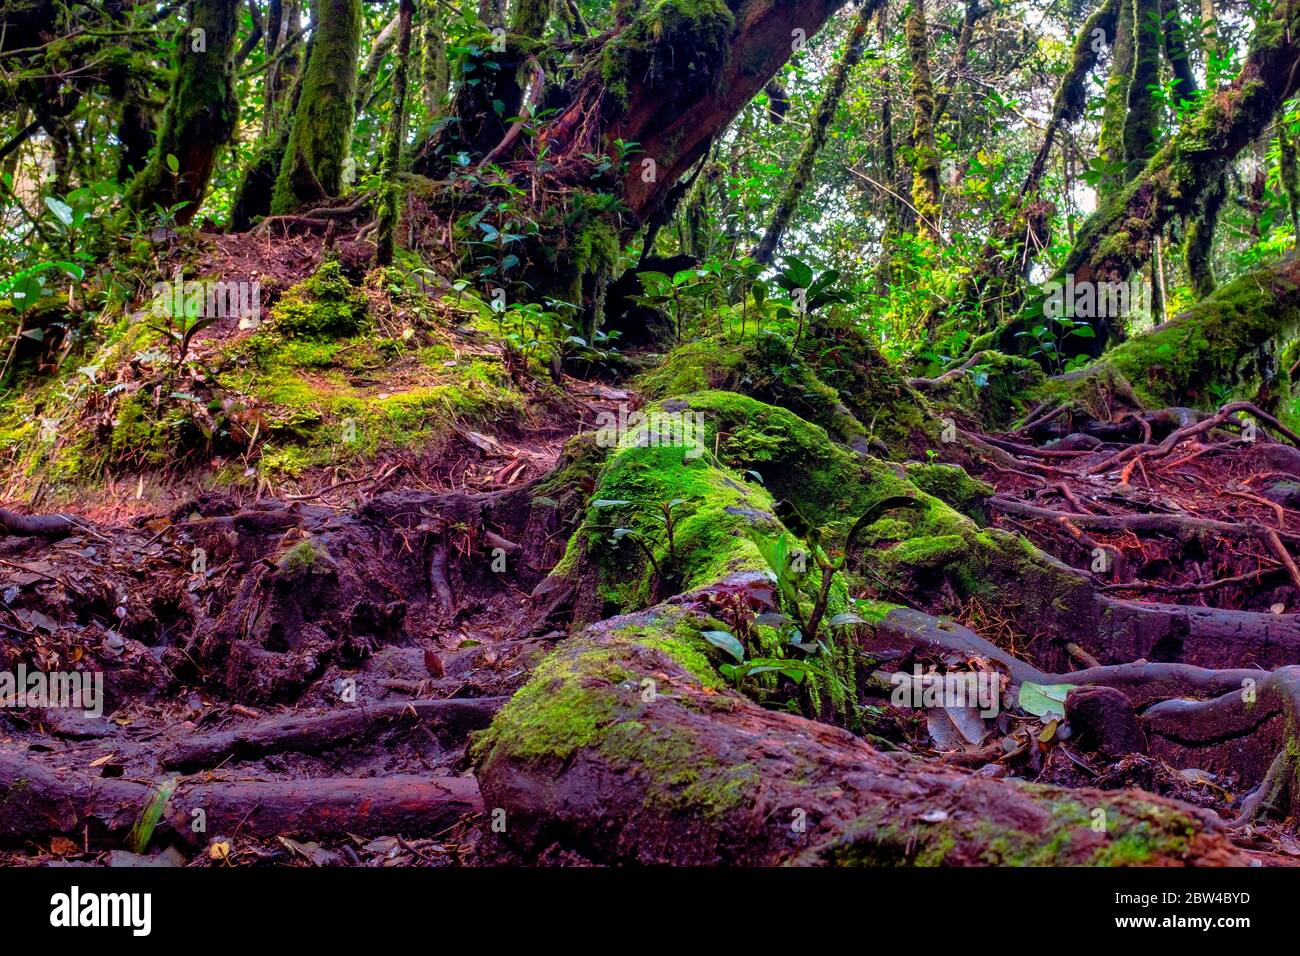 The Mossy Forest Of Gunung Brinchang, Brinchang, Malaysia Stock Photo